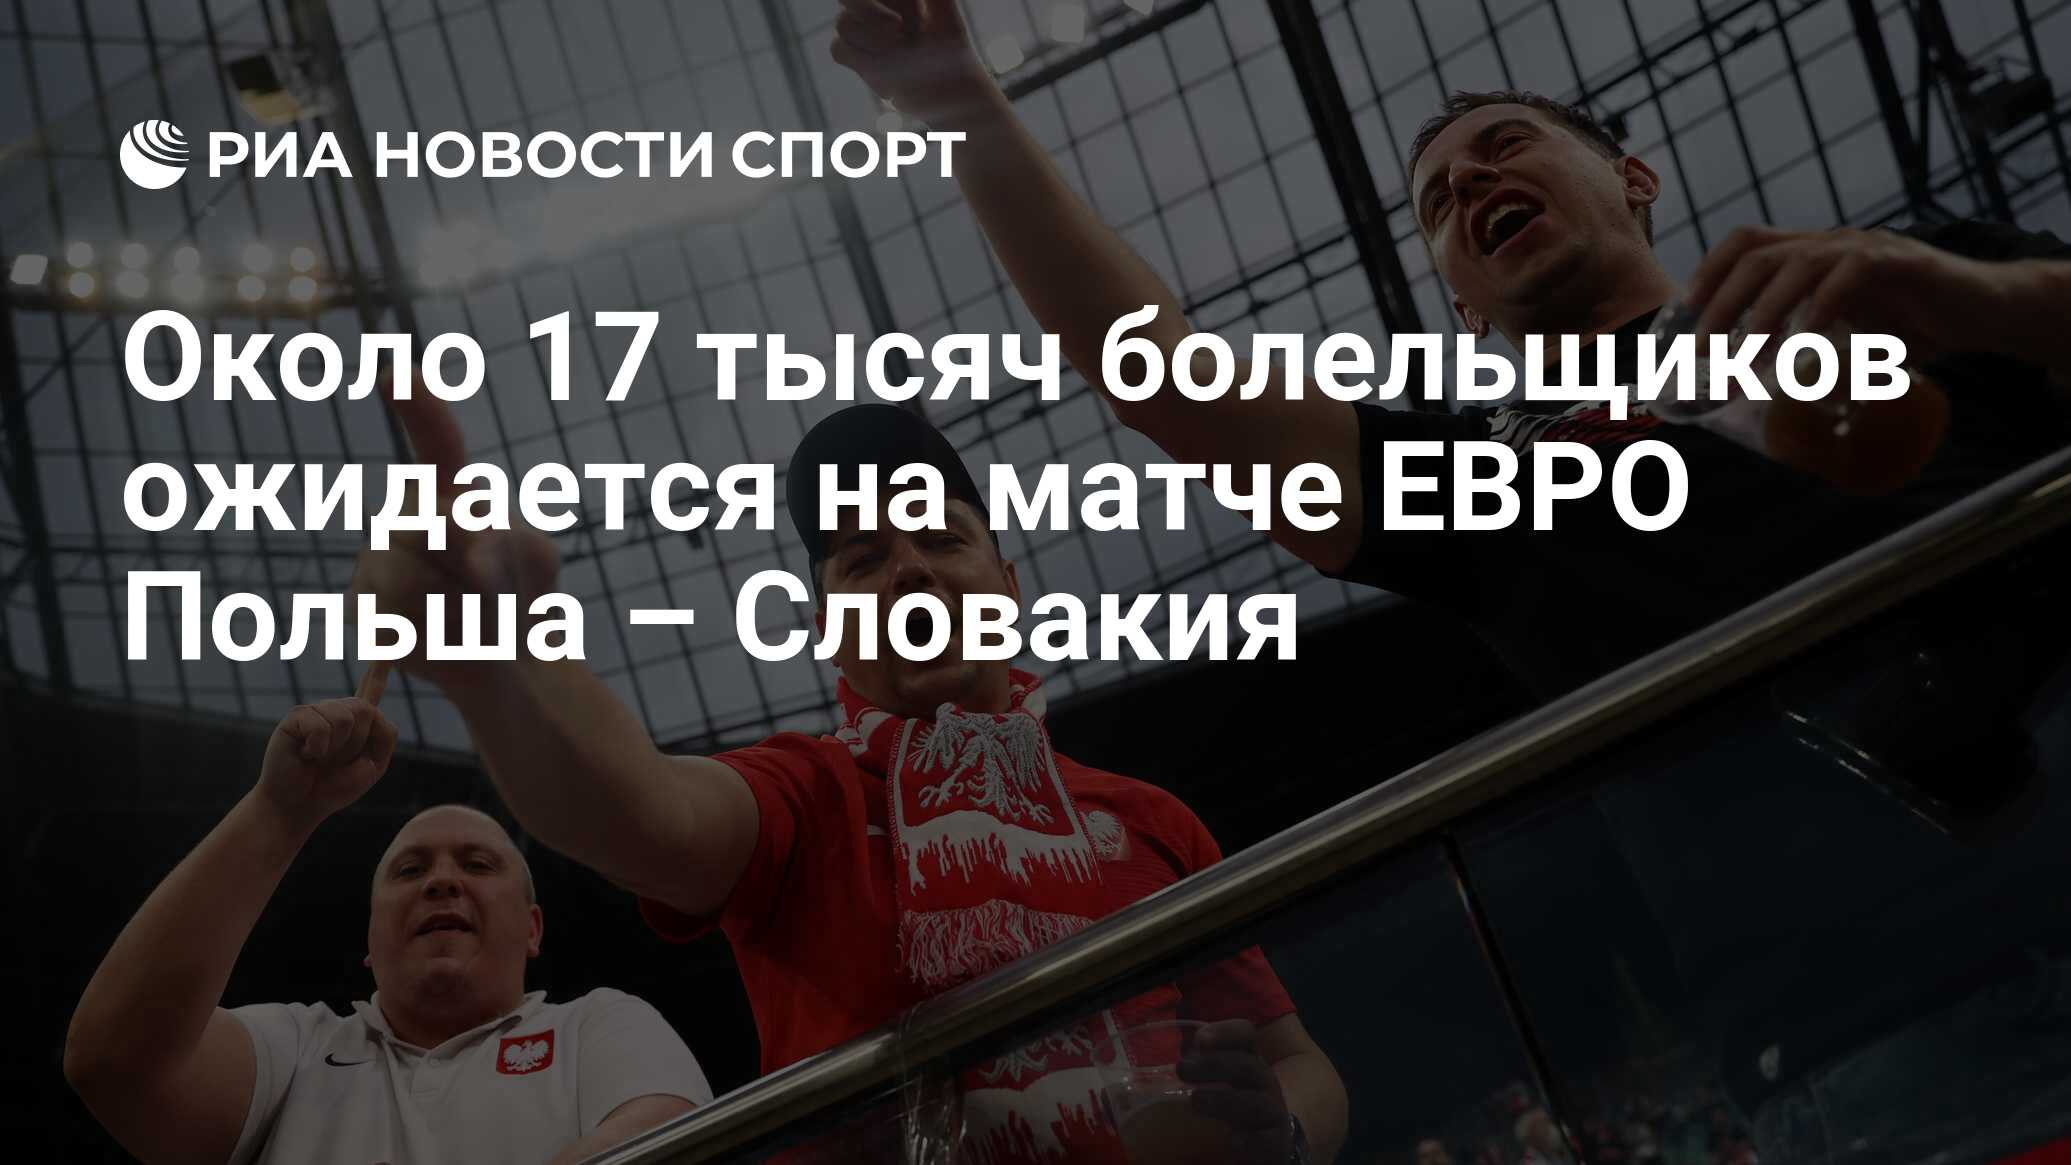 Около 17 тысяч болельщиков ожидается на матче ЕВРО Польша ...